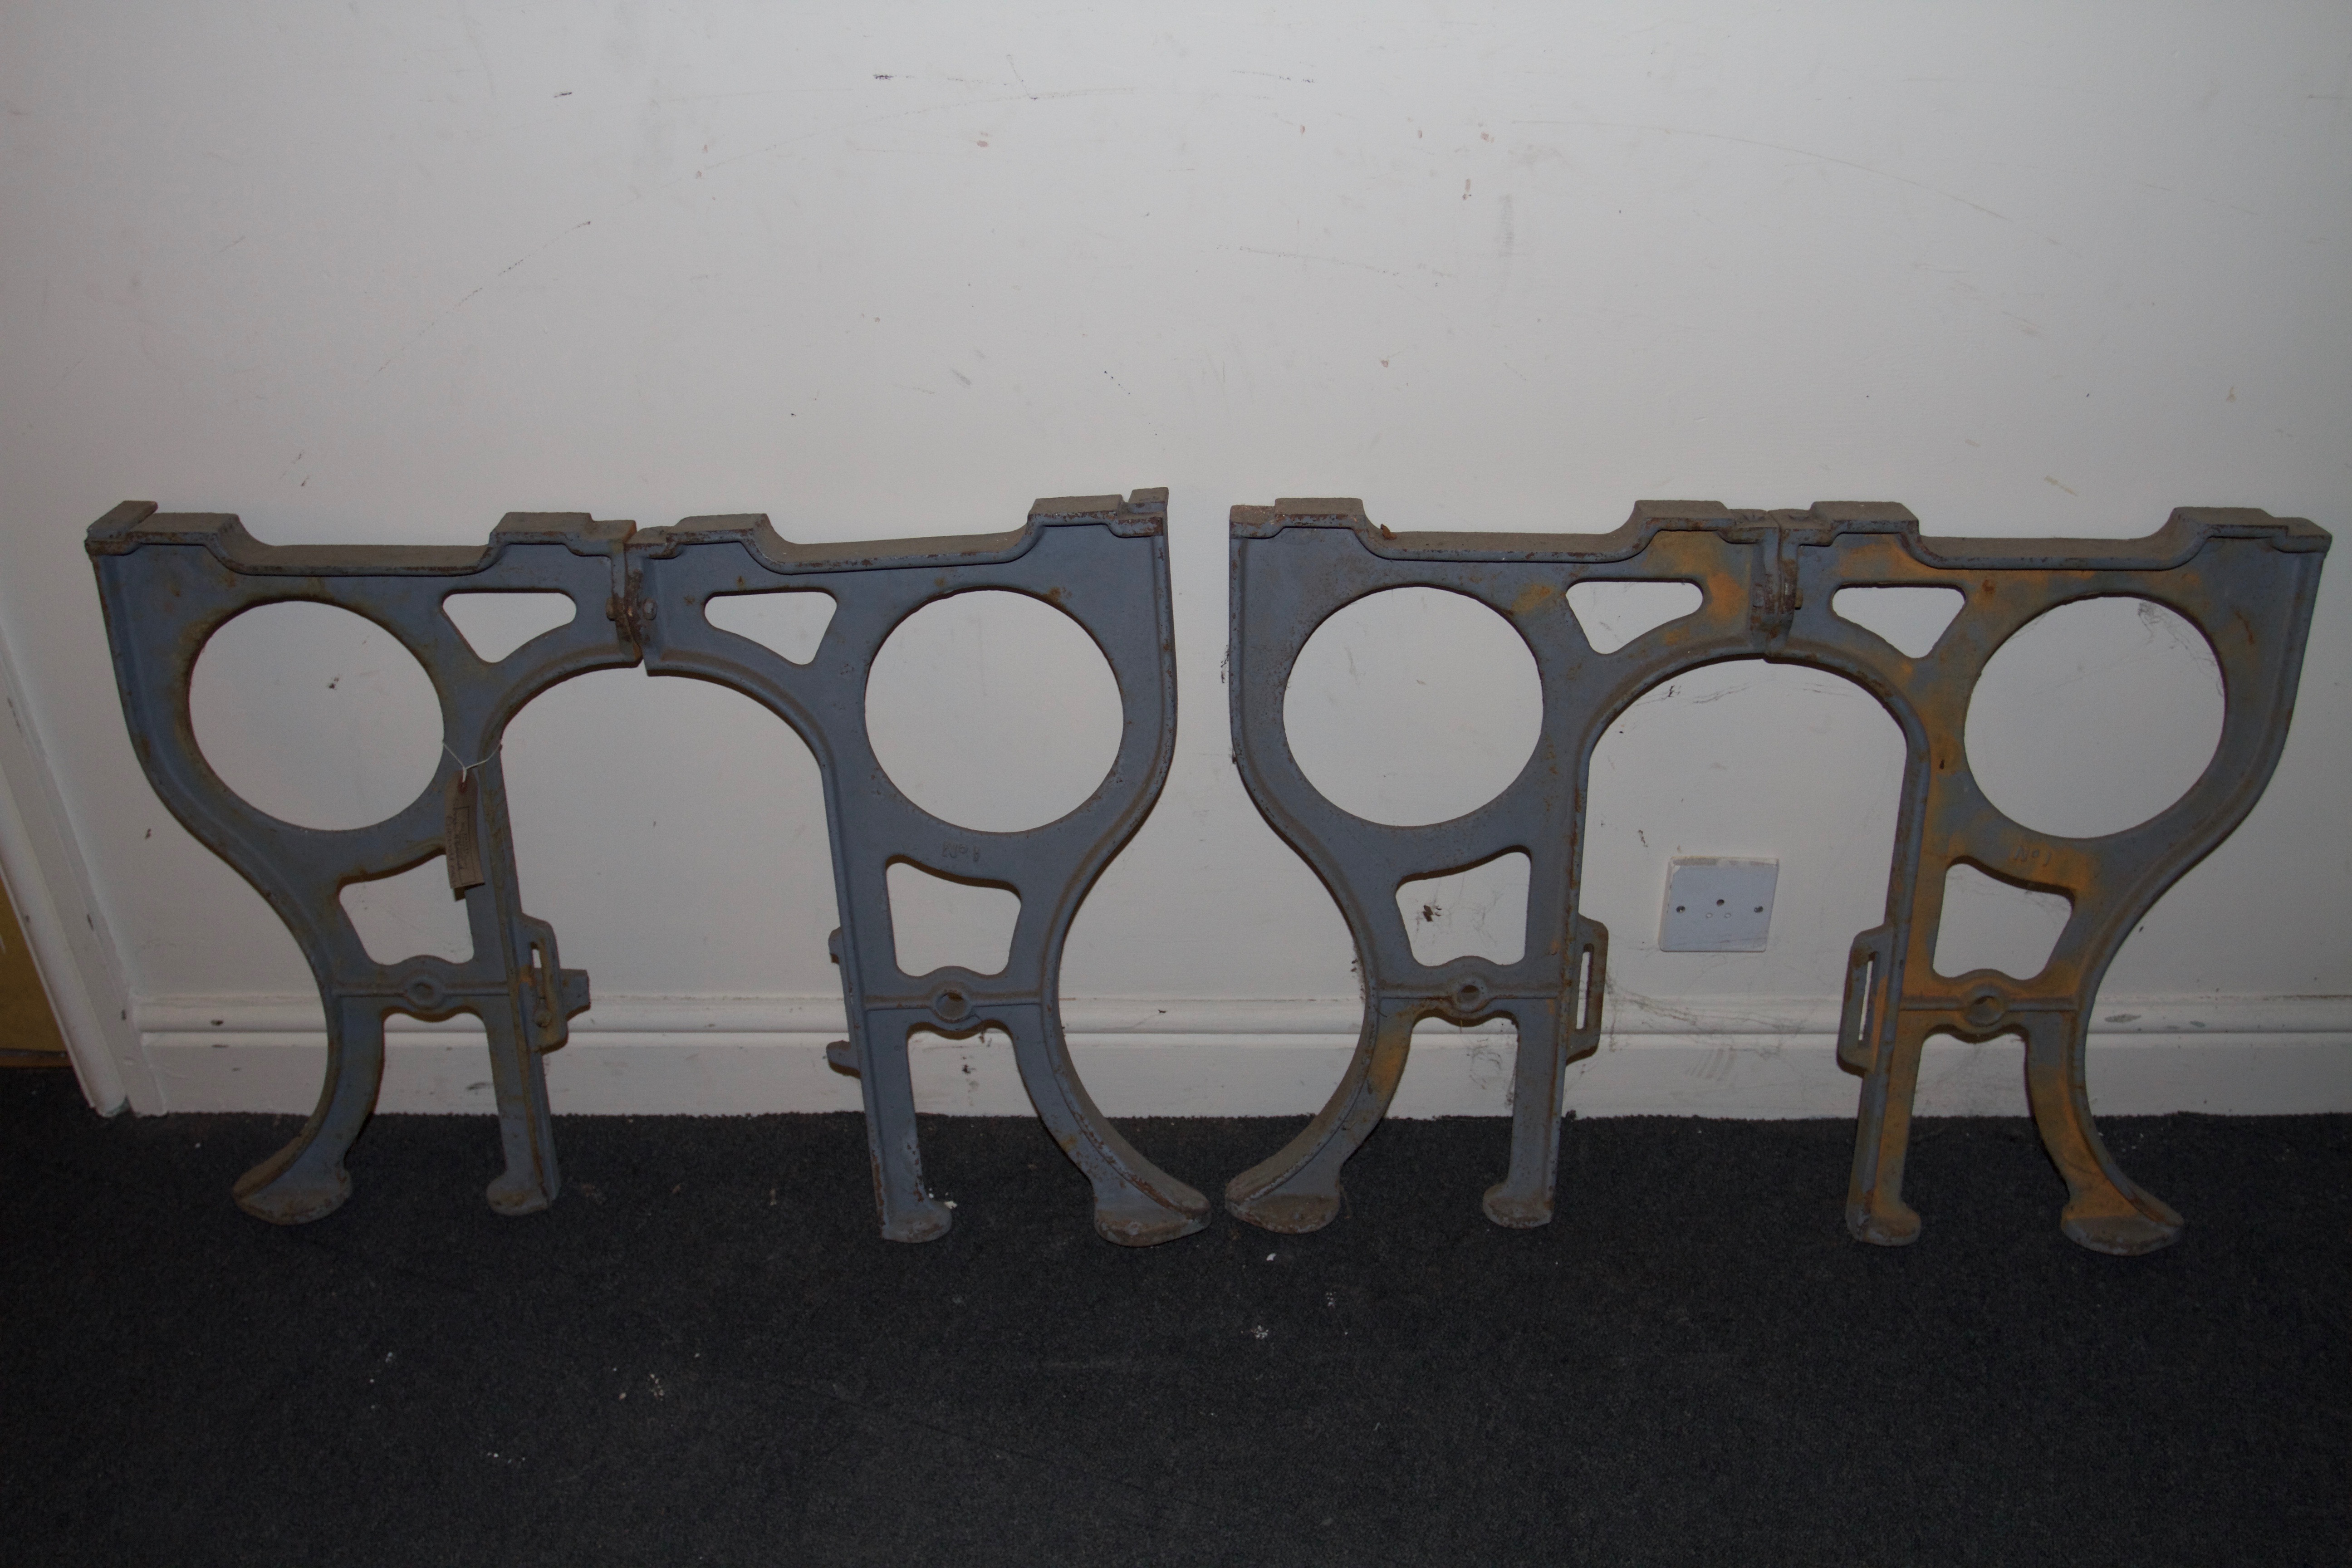 Victorian Cast Iron Sink Brackets